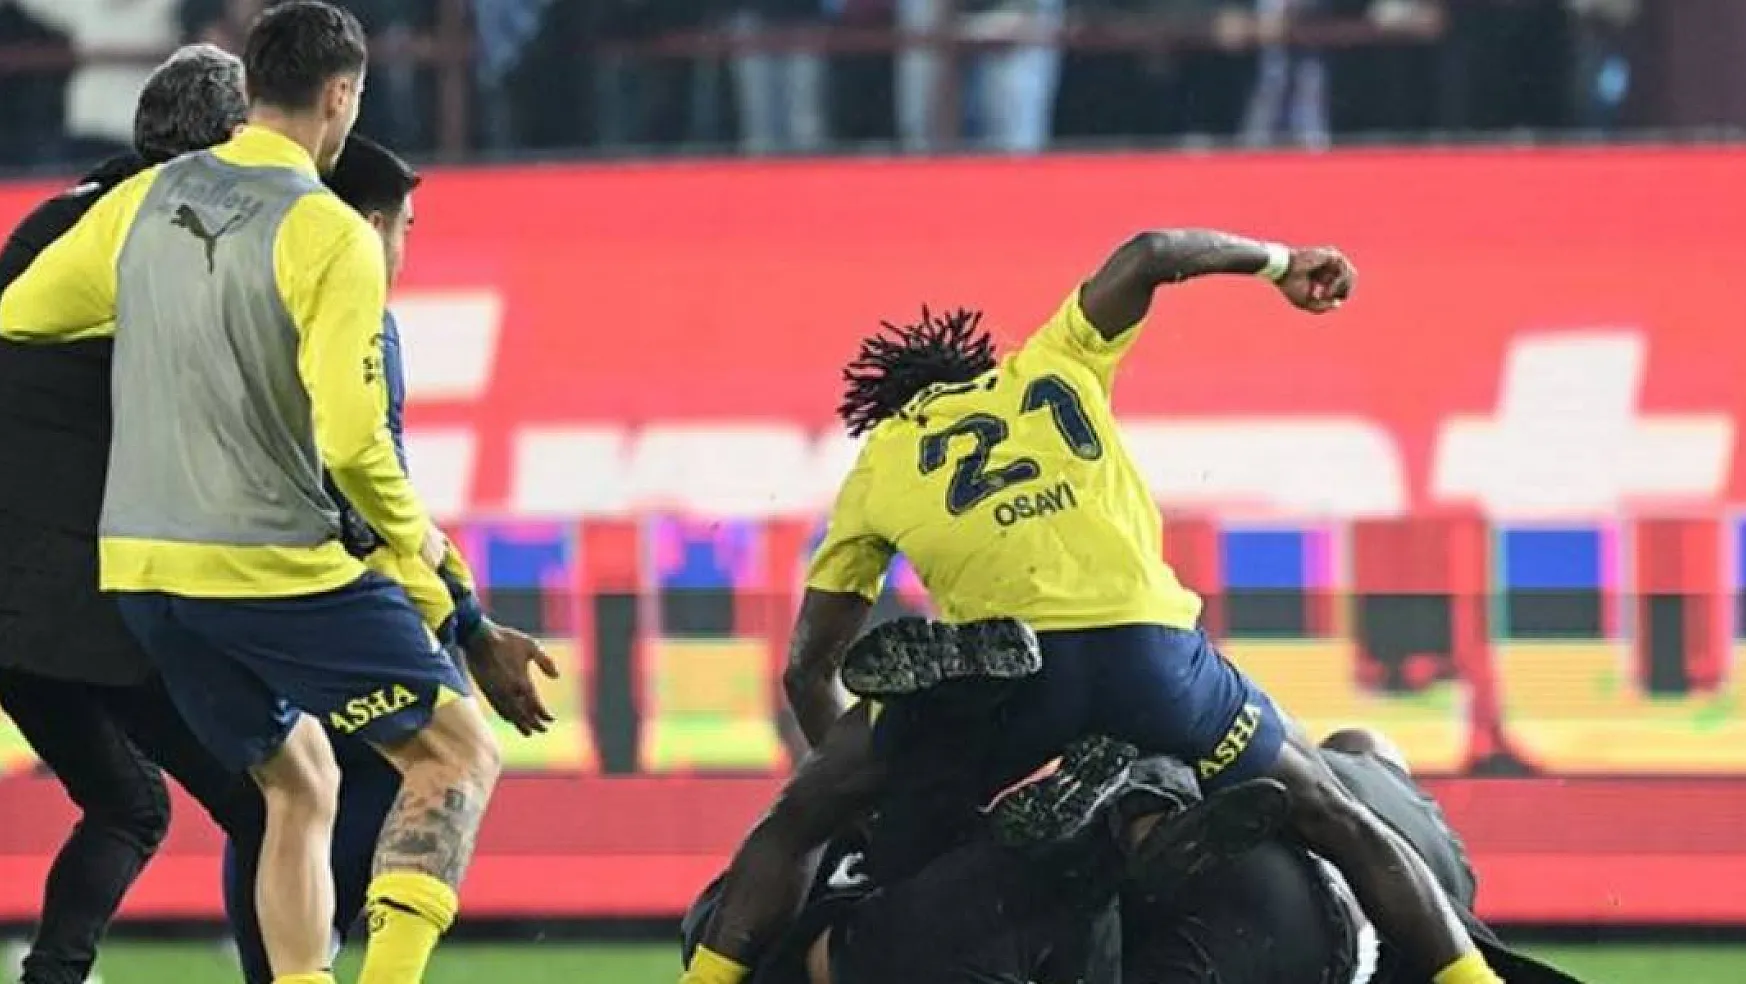 Olaylı Trabzonspor Maçı Sonrası Fenerbahçe'de 3 Oyuncu PFDK'ya Sevk Edildi